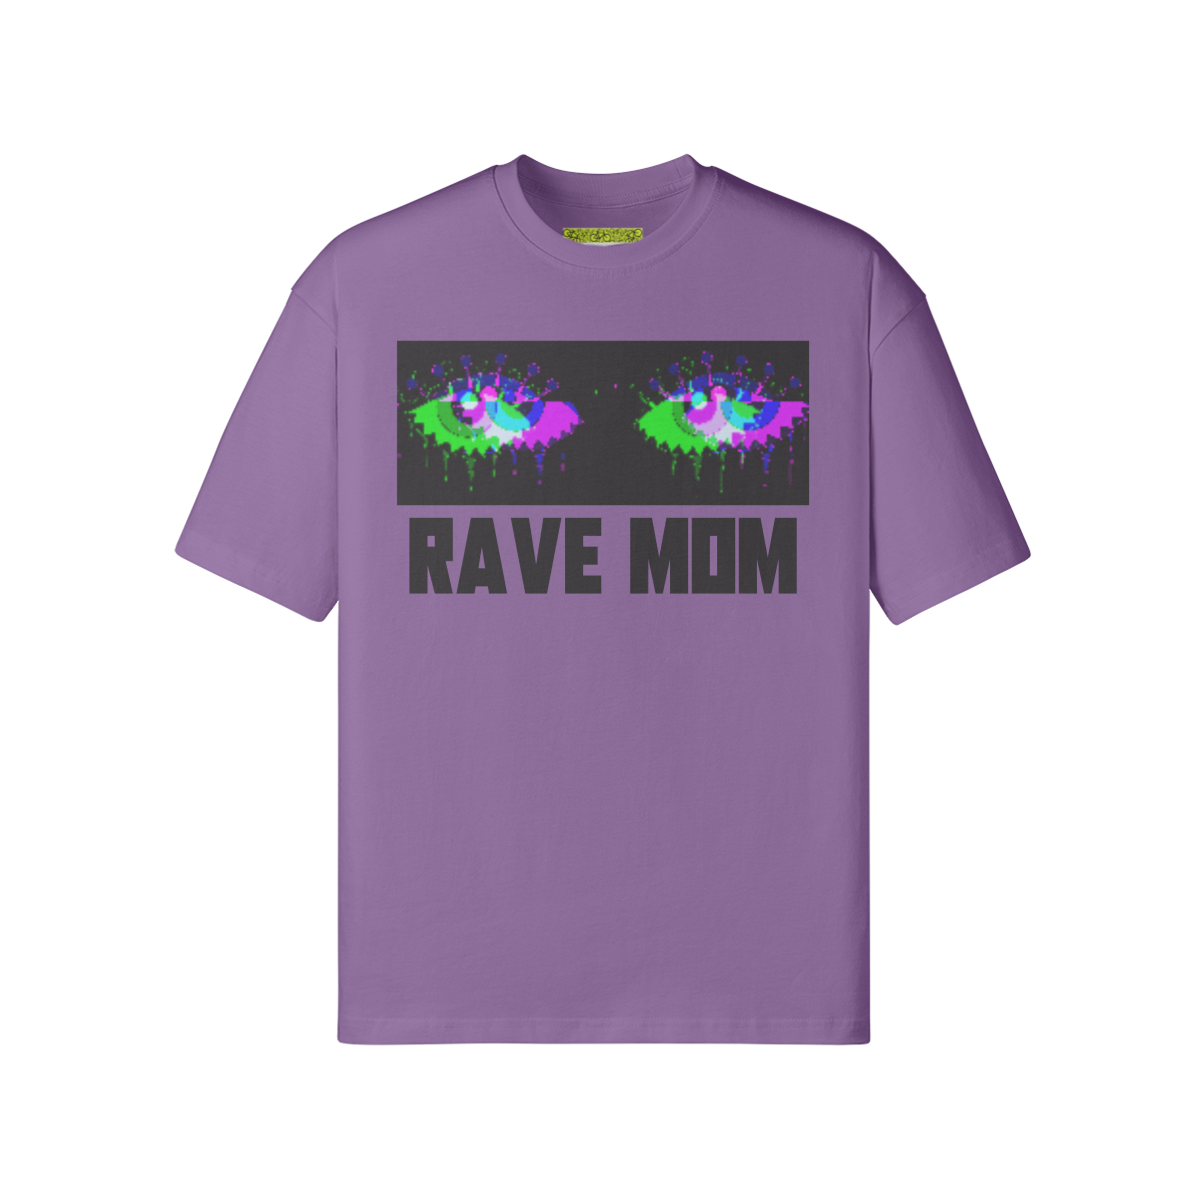 3RAVE - Unisex Loose T-shirt - front - Purple haze